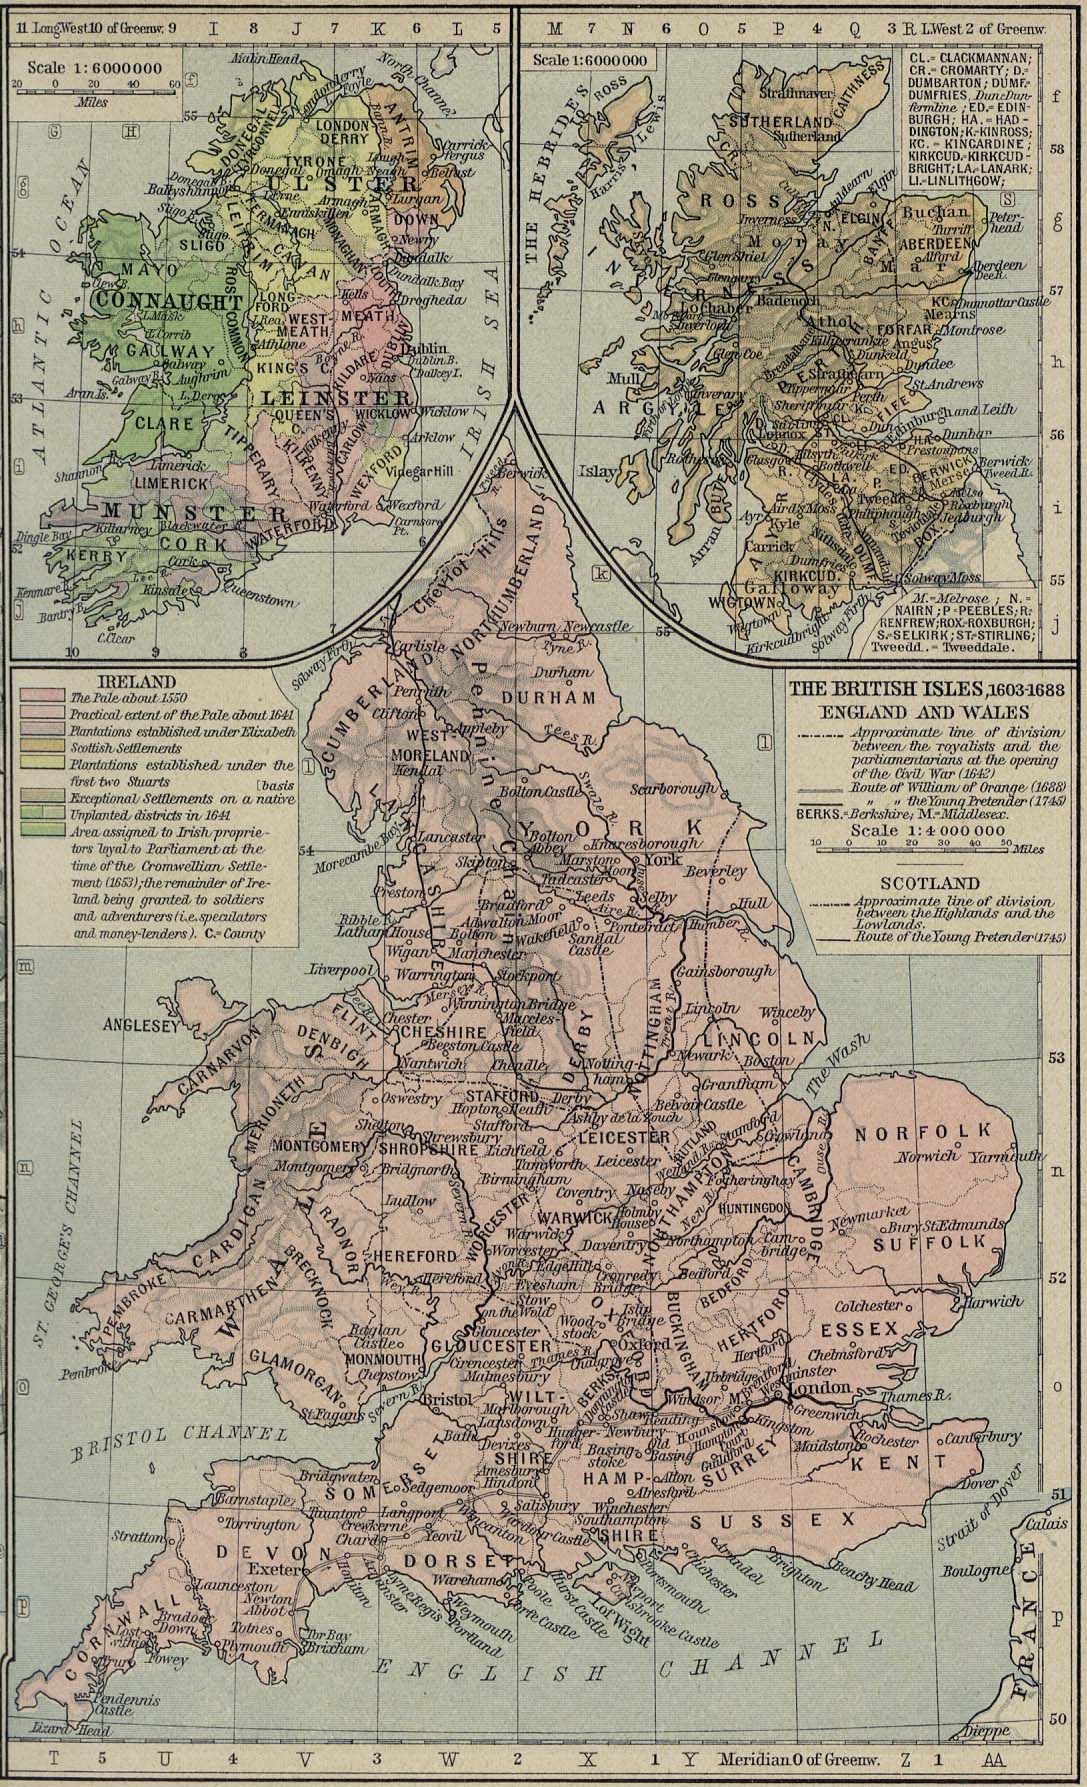 The British Isles 1603--1688